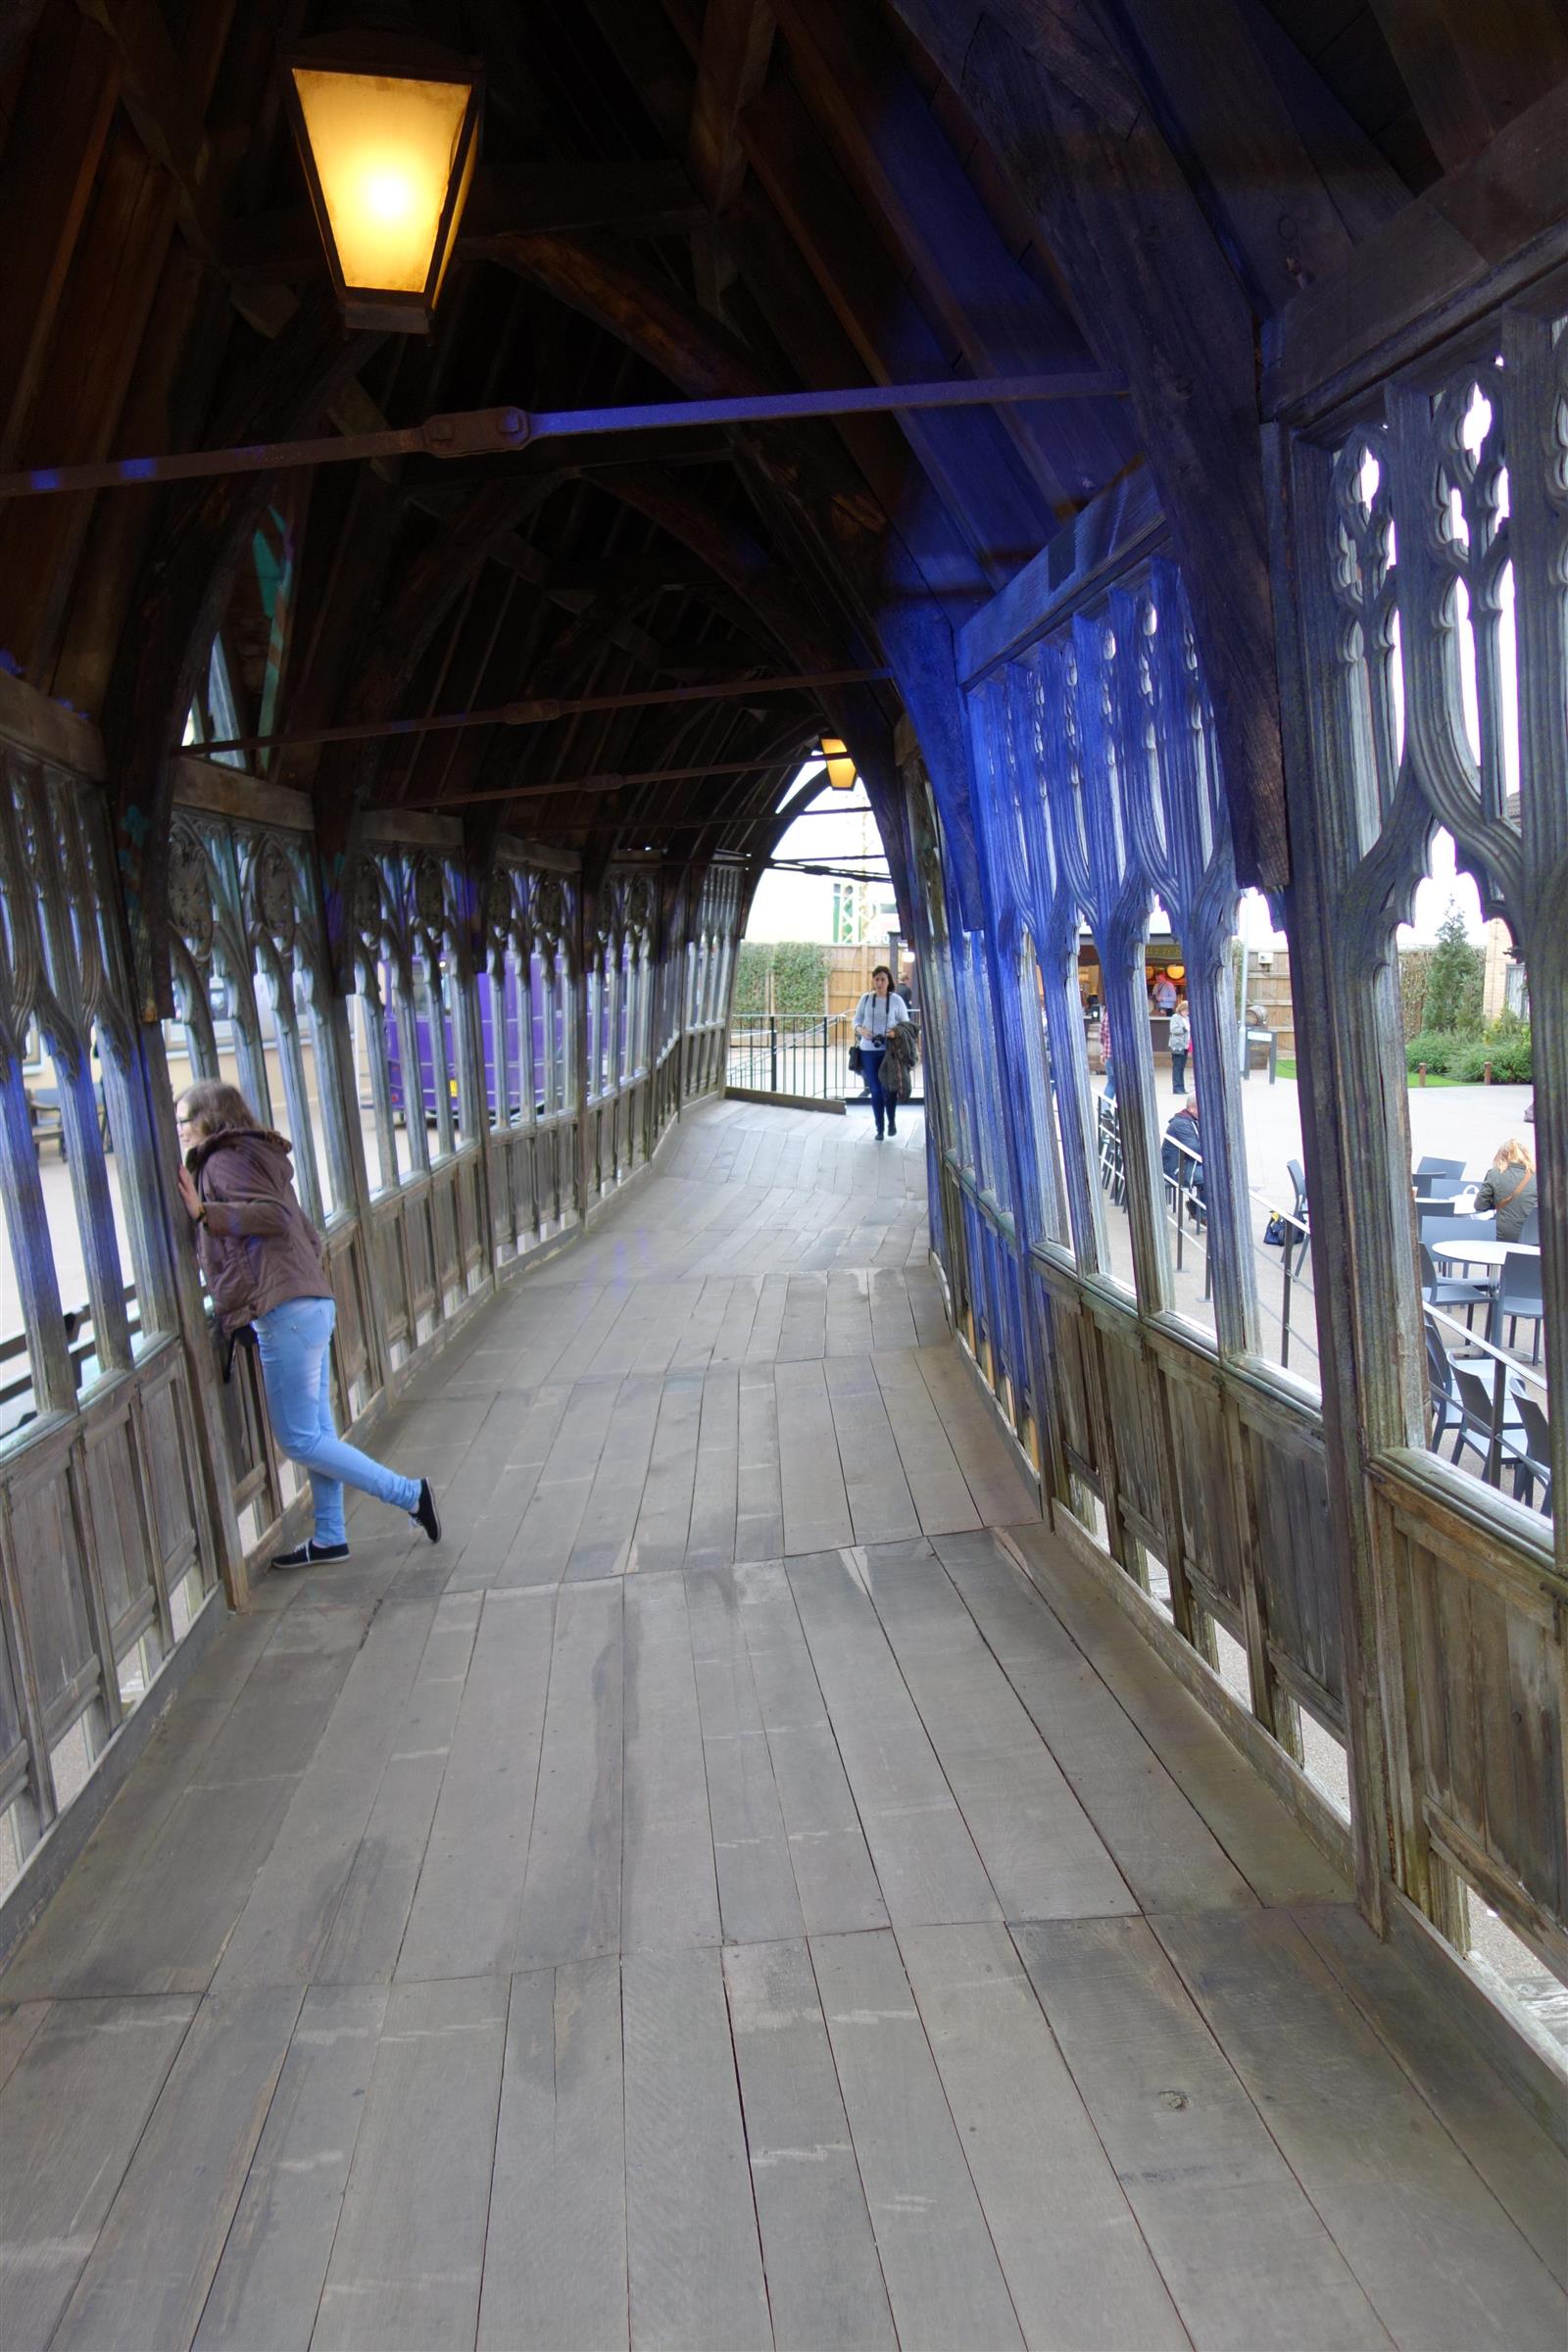 57. On The Hogwarts Bridge